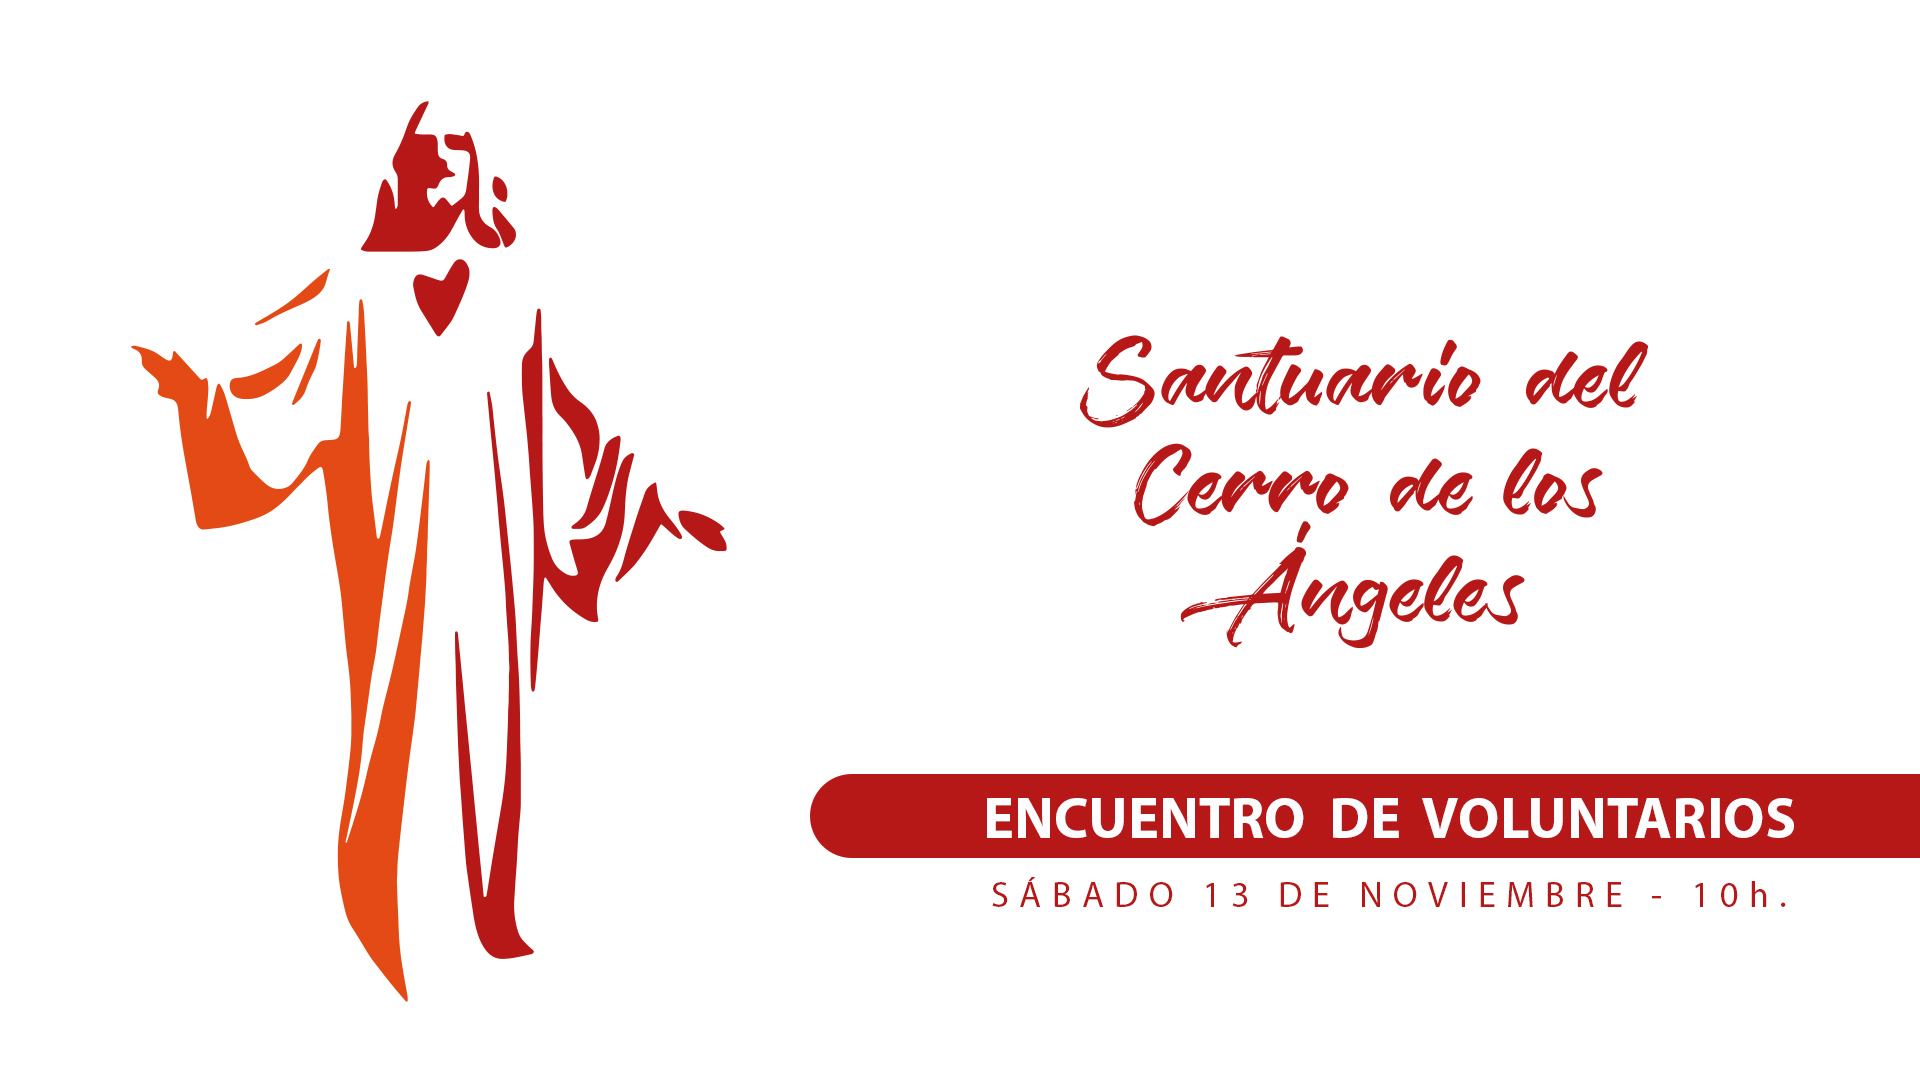 Encuentro Voluntarios 2022 - Santuario del Cerro de los Ángeles